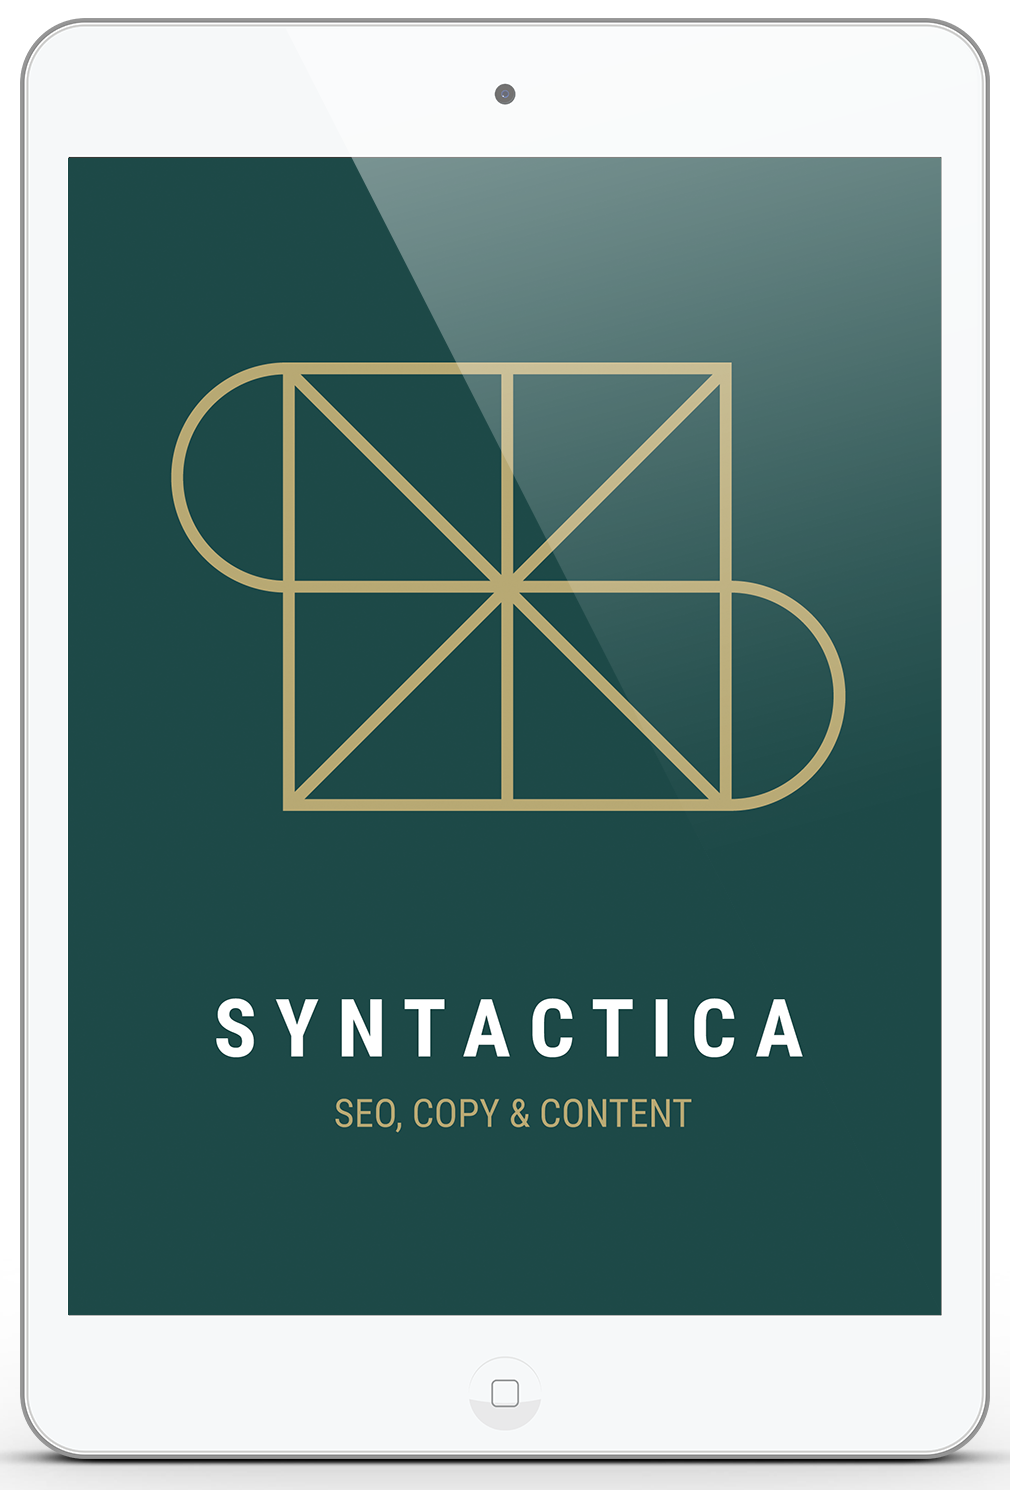 Platta logga Syntactica2.png